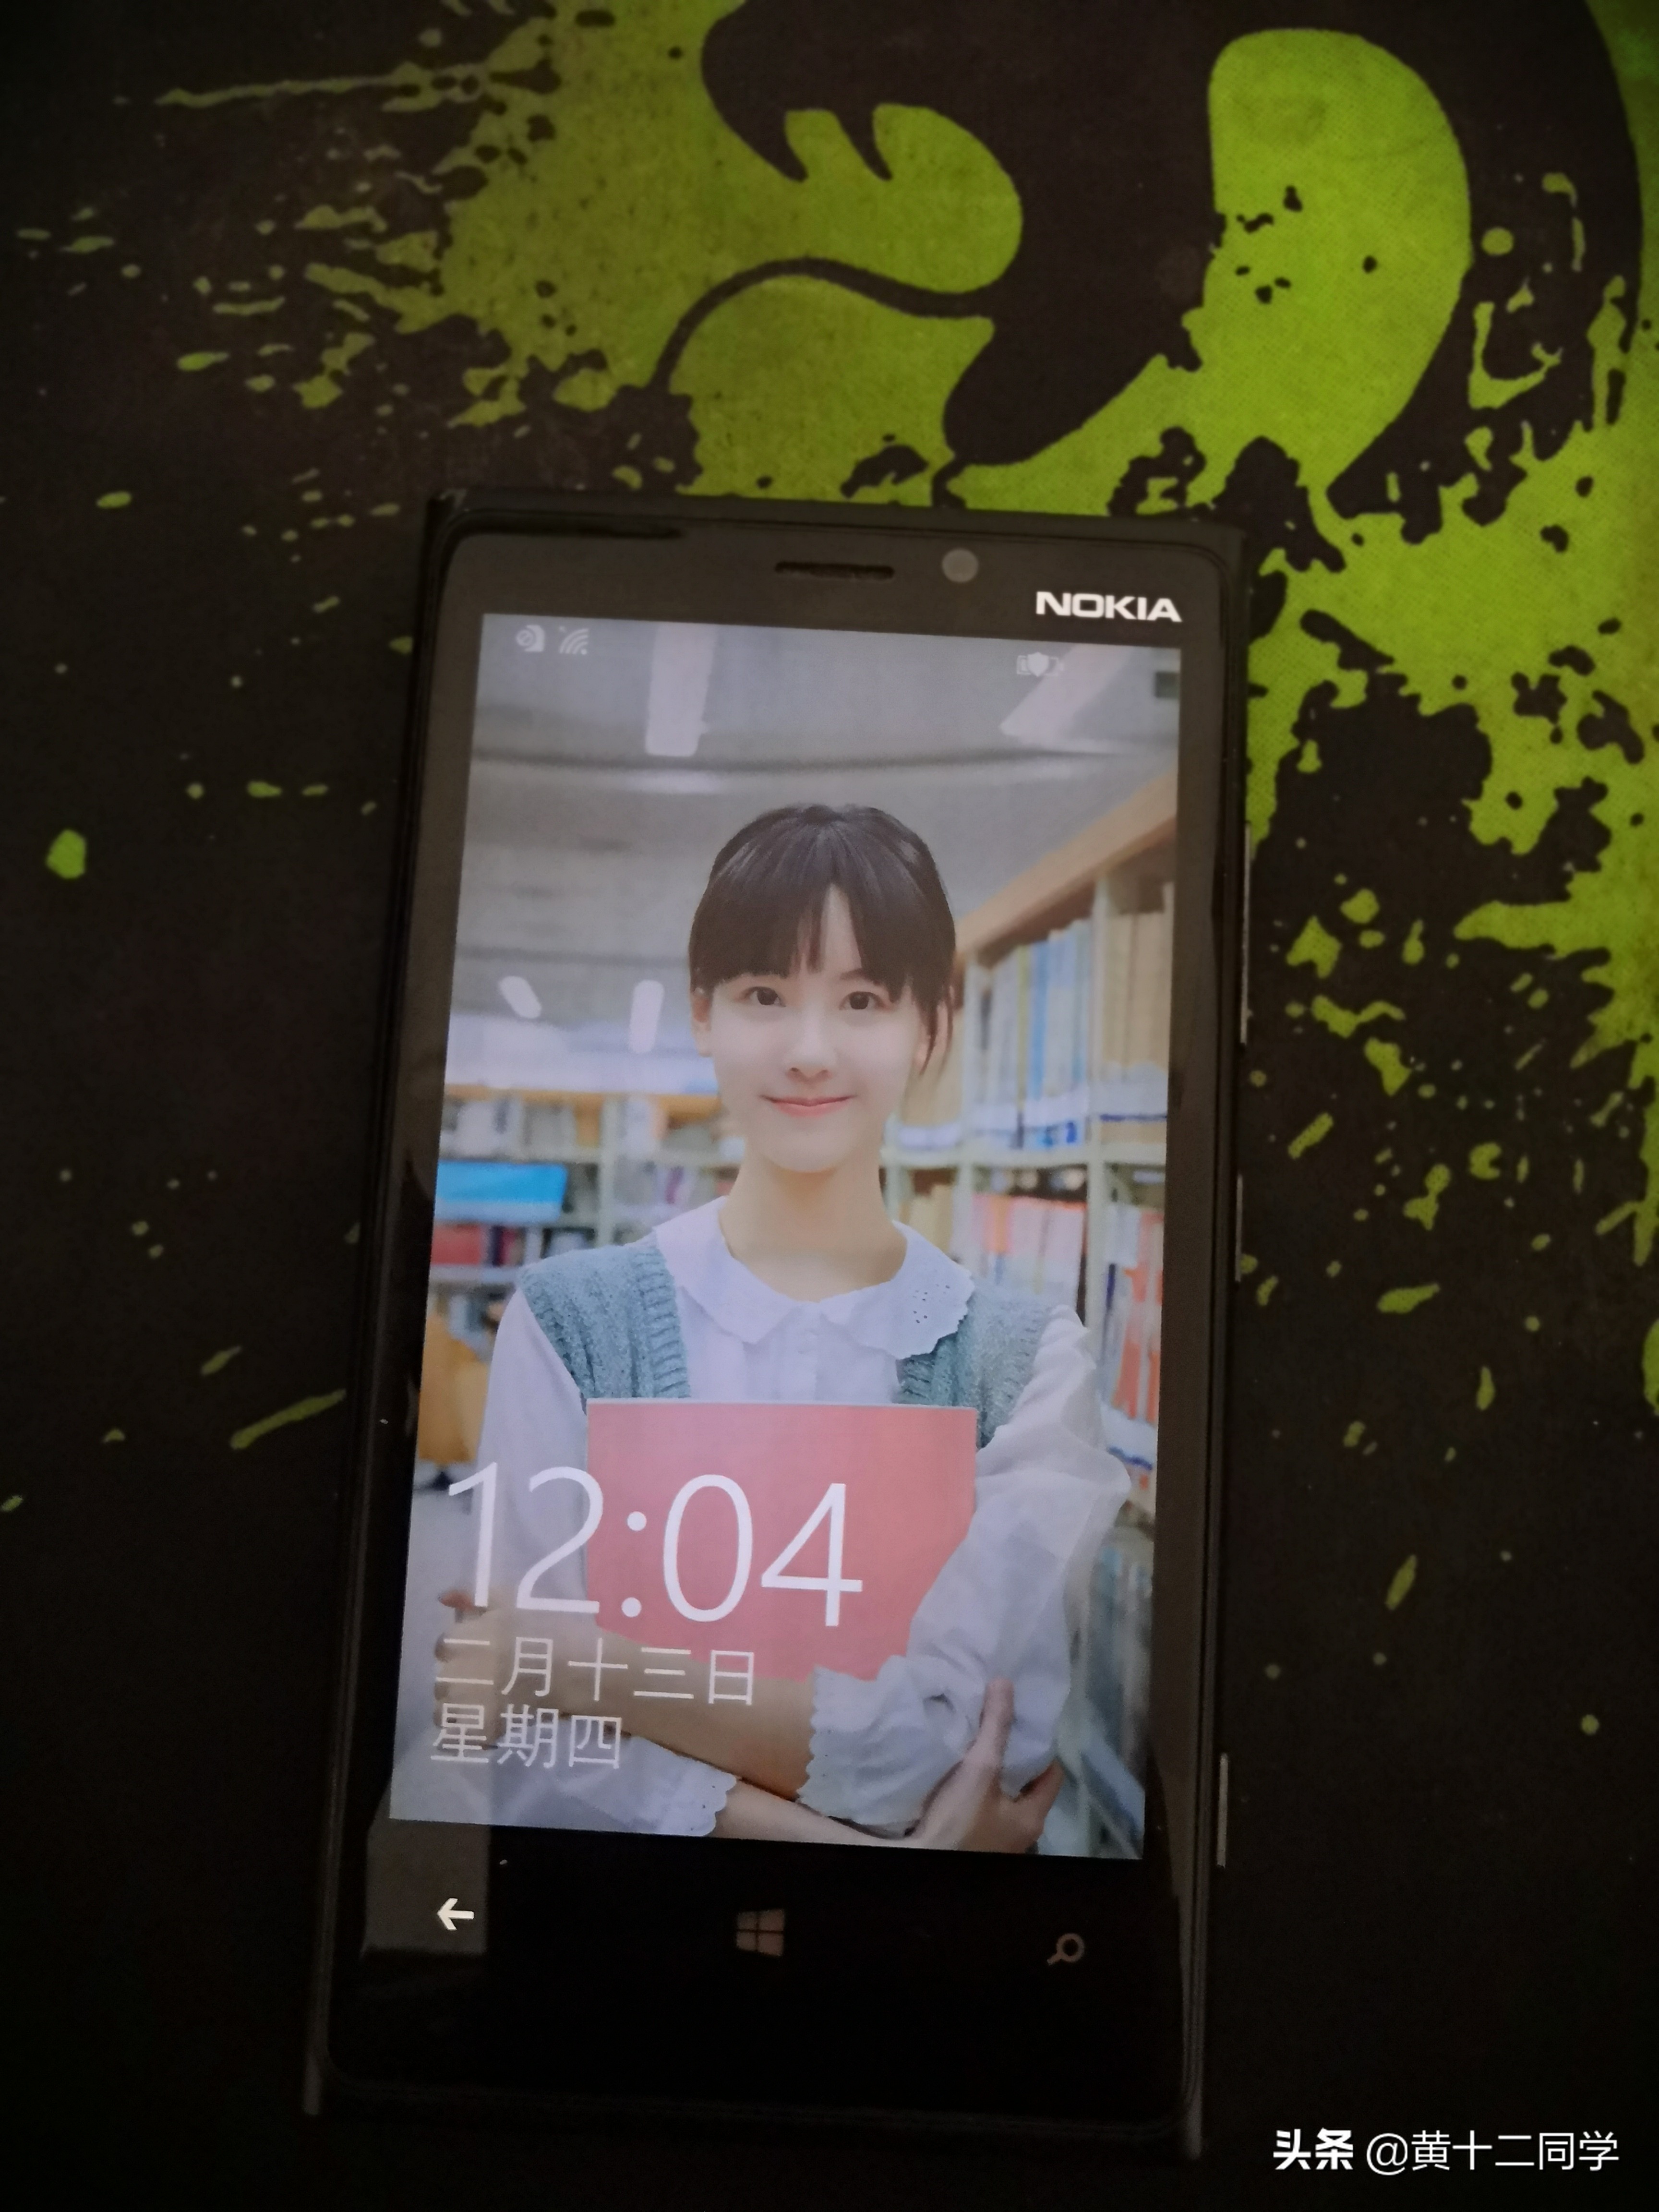 往日机皇Nokia Lumia 920追忆